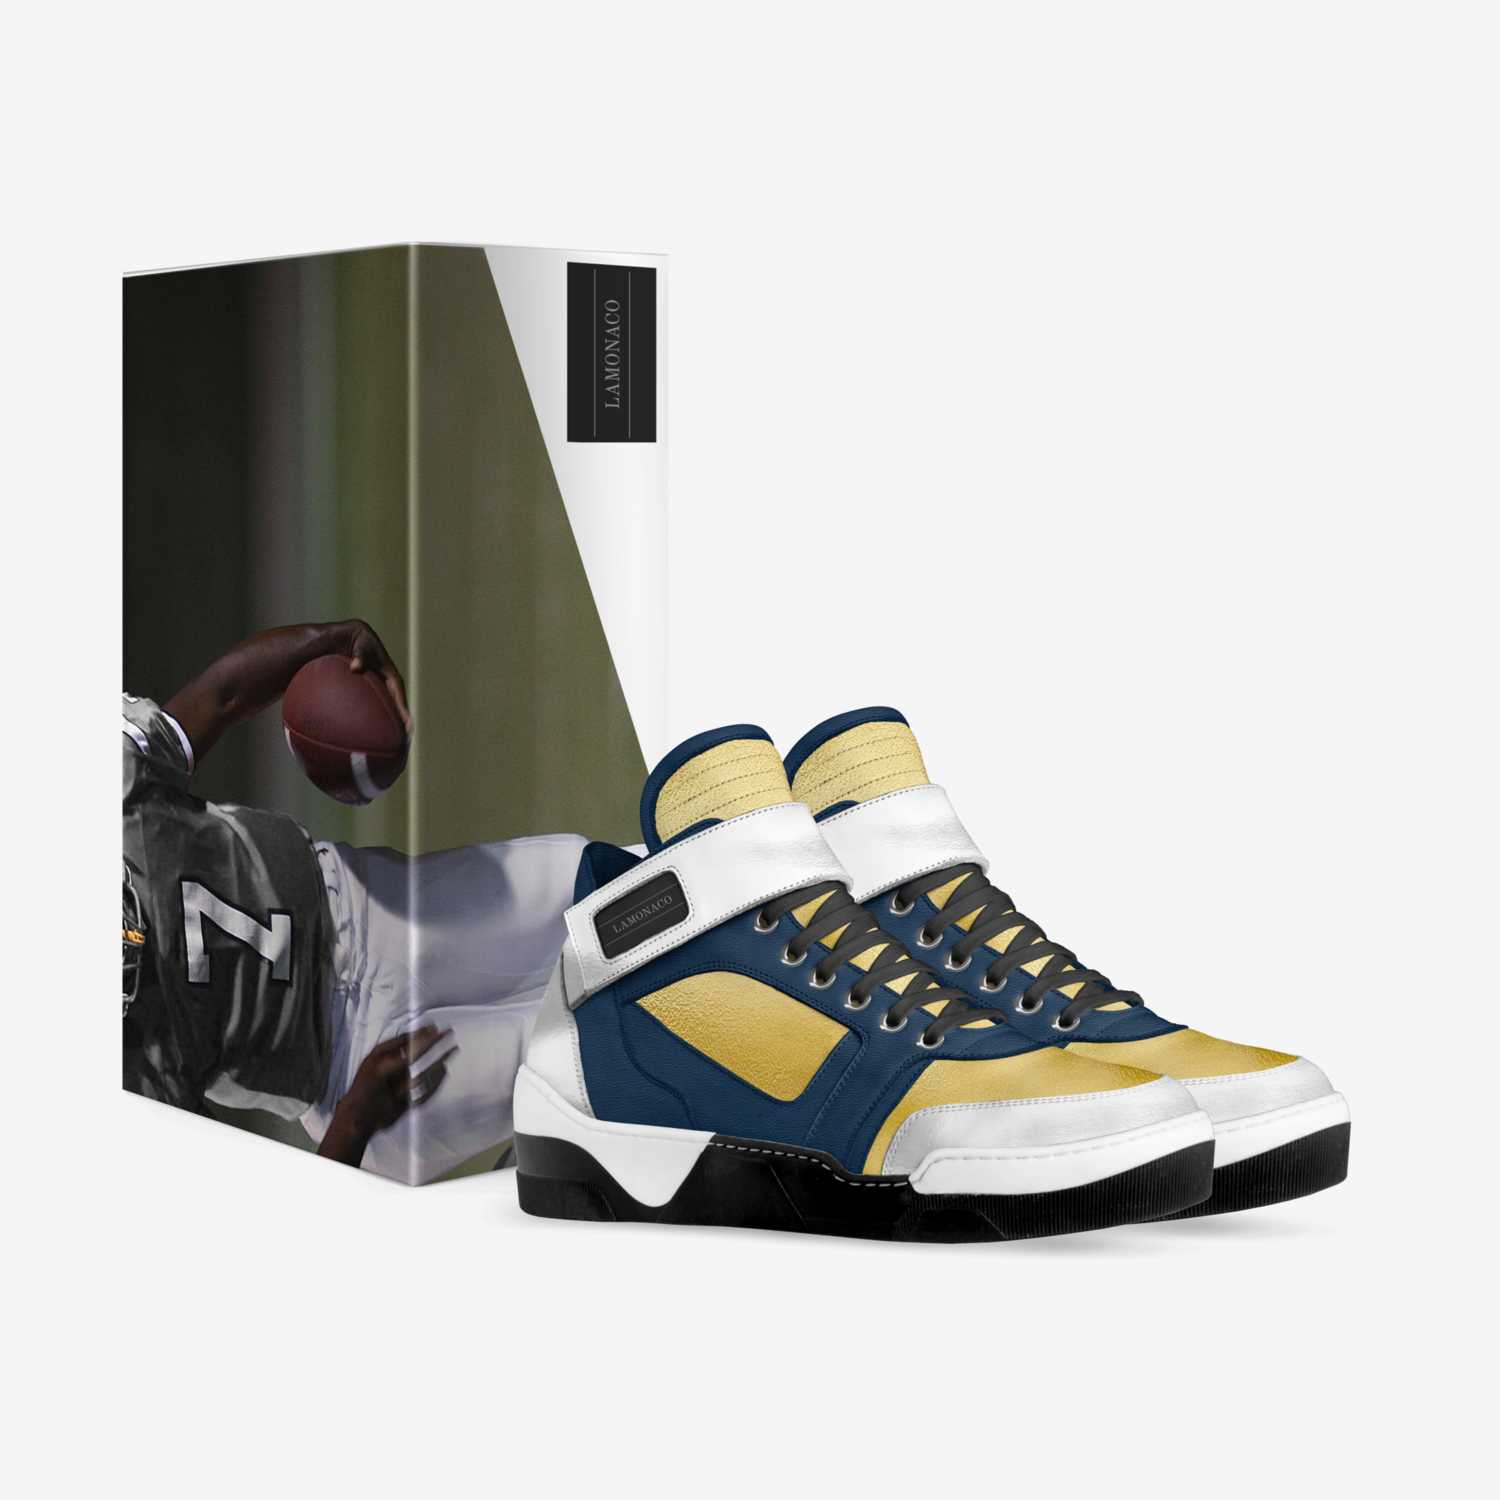 LAMONACO custom made in Italy shoes by Laura Lamonaco | Box view